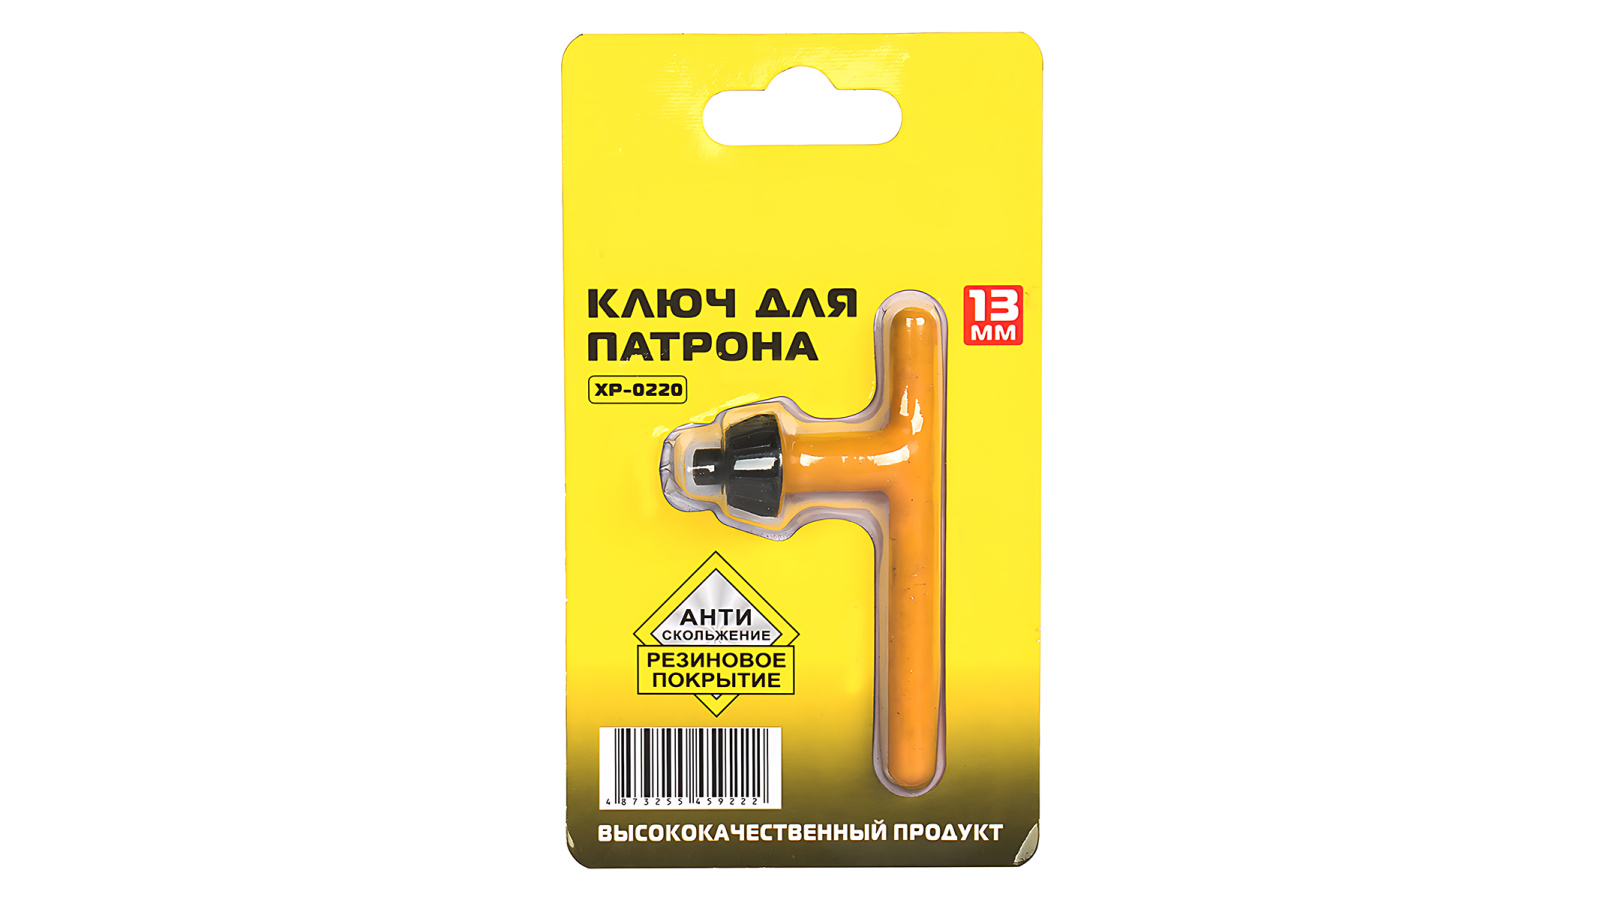 Ключ для патрона 13мм с резиновым покрытием XP-0220 фотография №1